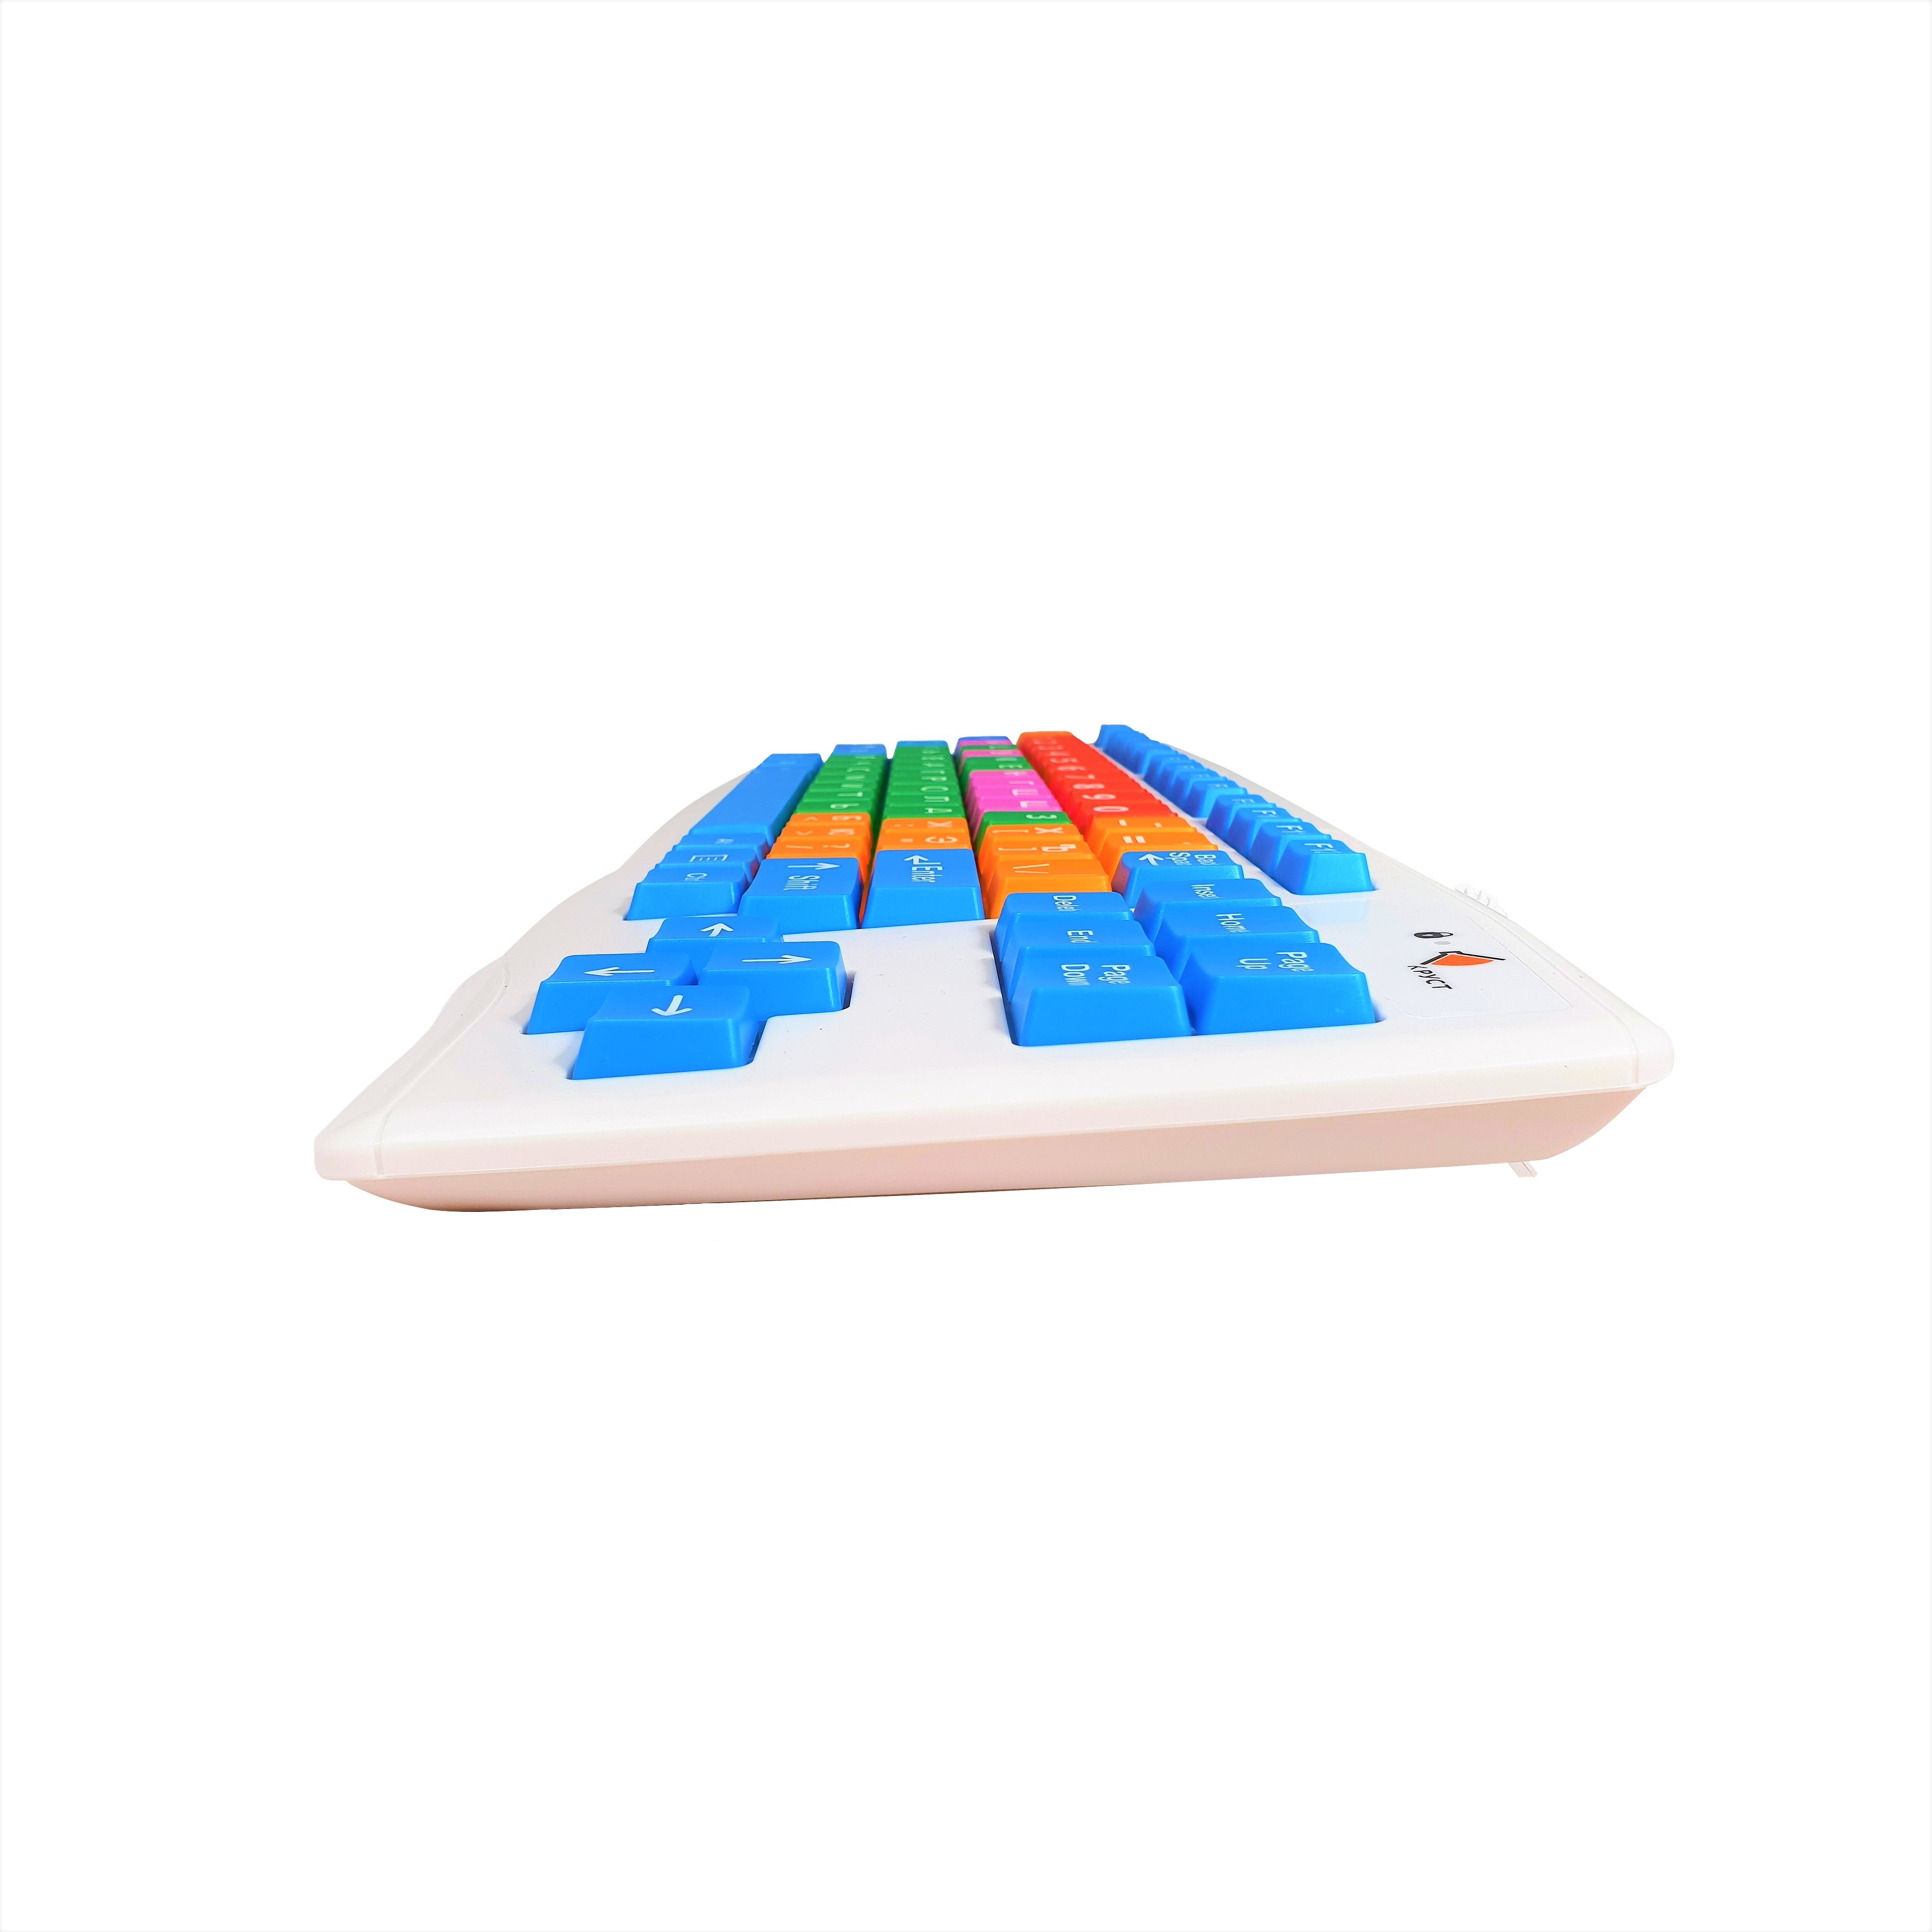 Клавиатура с большими кнопками для людей с ограниченными возможностями